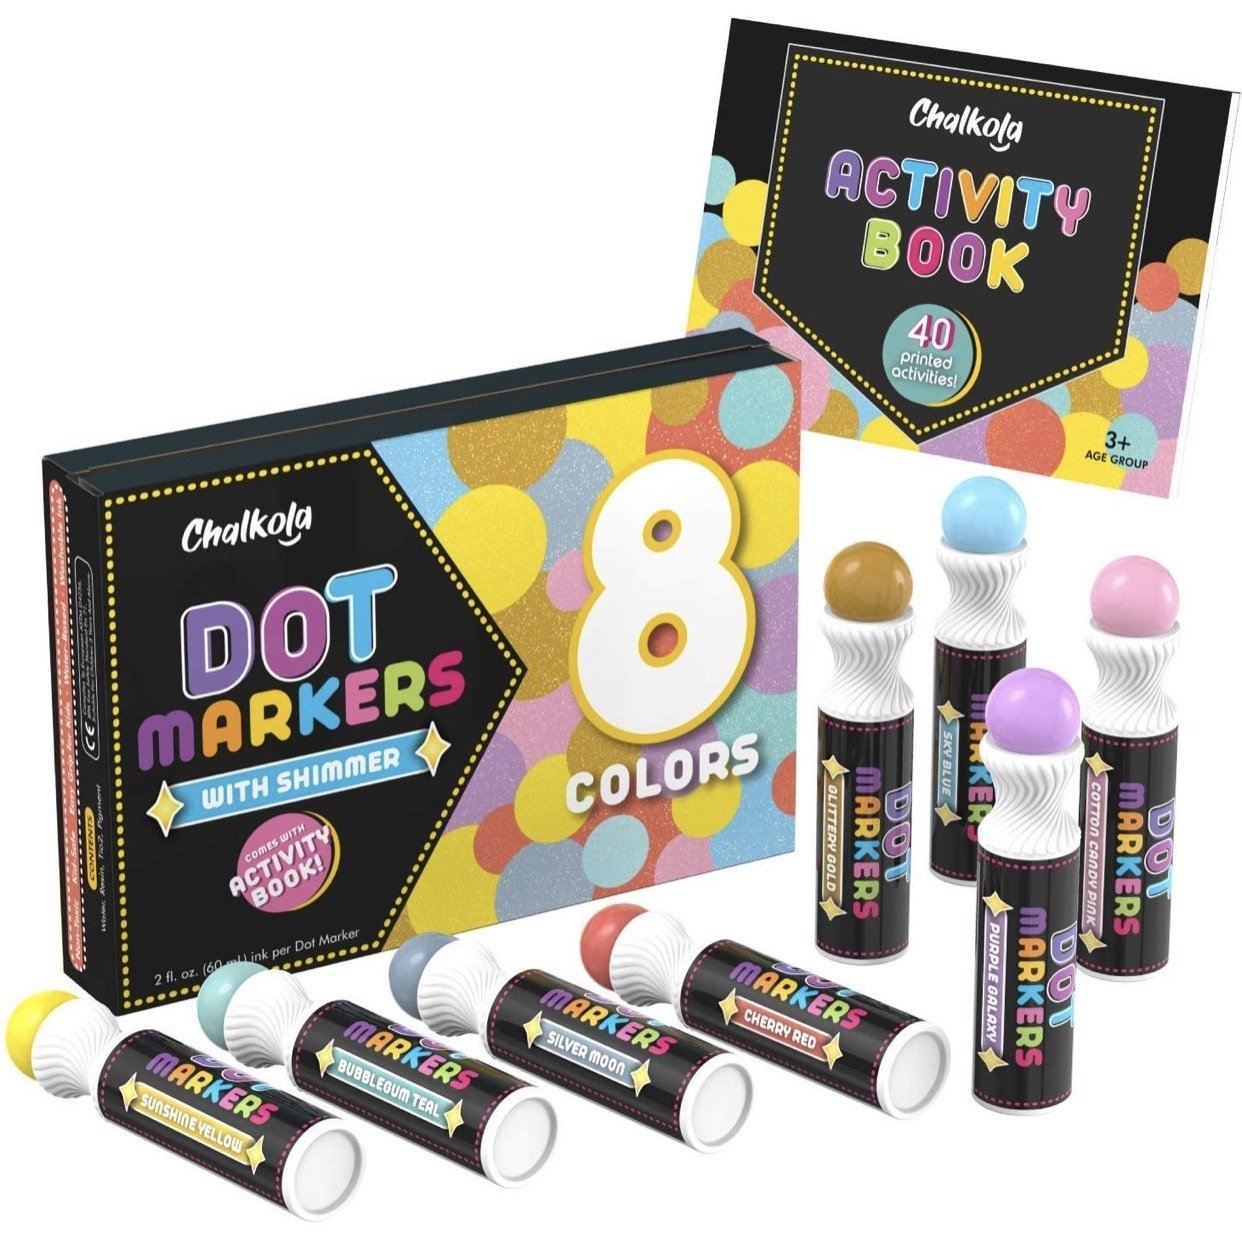 Washable 8 Colors Dot Markers Set- Art Supplies fot Kids